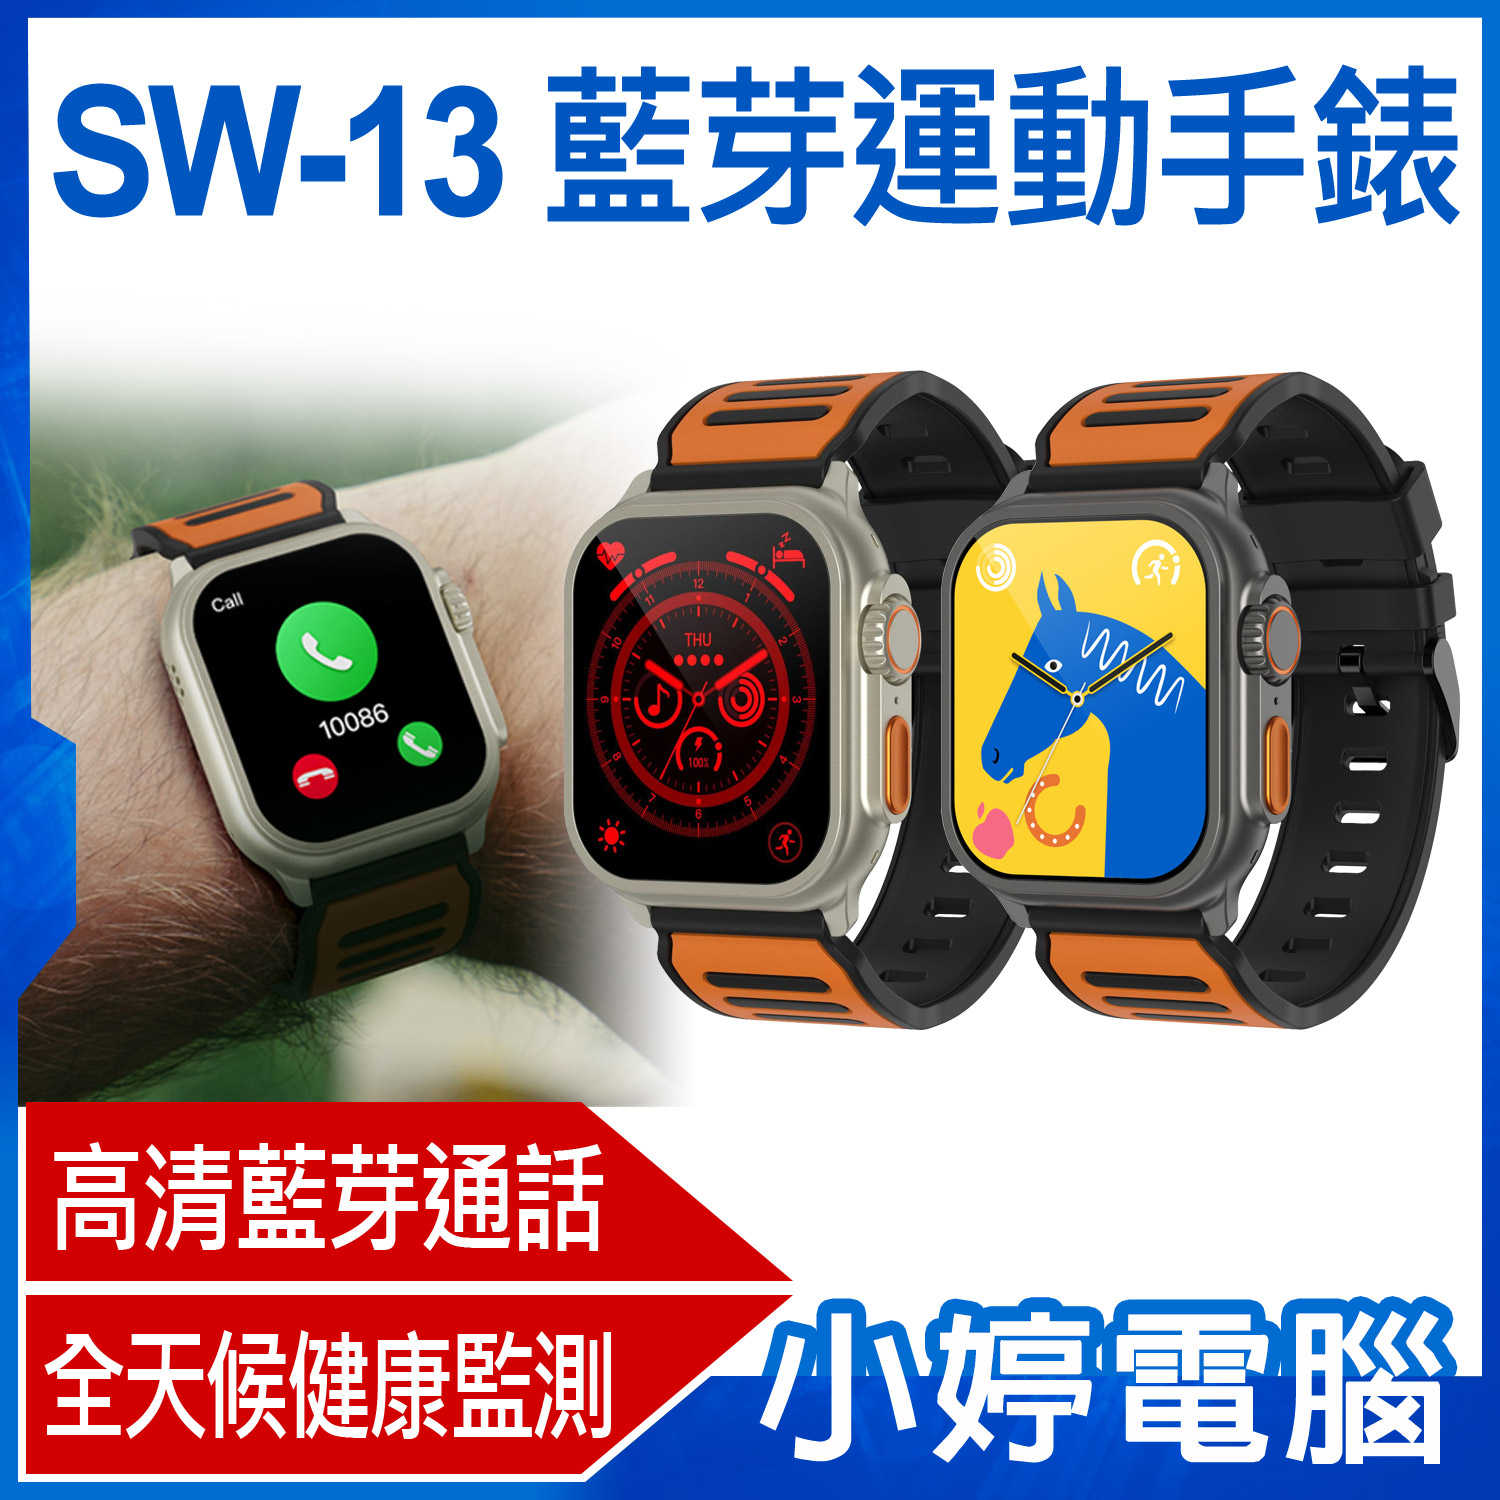 【小婷電腦】SW-13 藍芽運動手錶 健康監測 心率監測 藍芽通話 訊息推播 IP68防水 智能語音助手